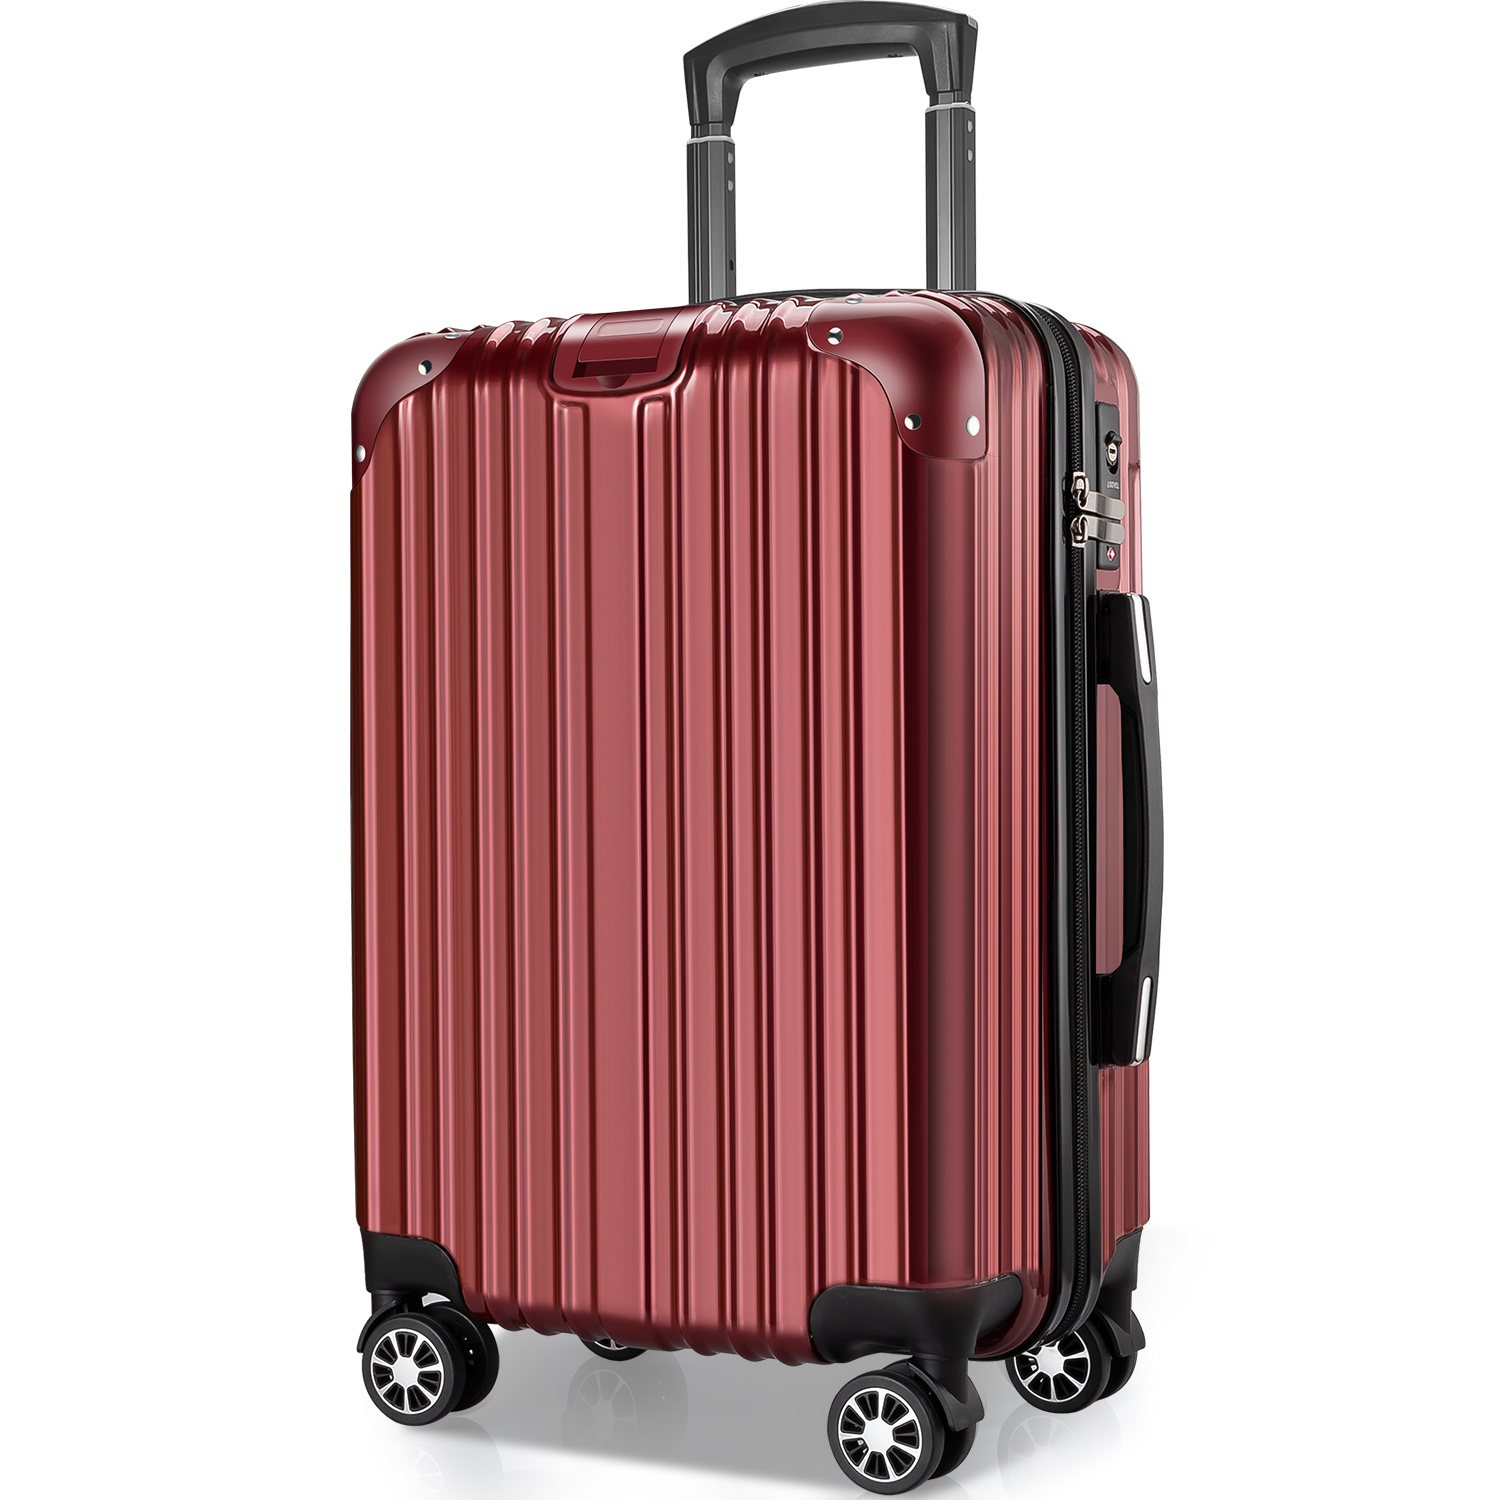 VARNIC スーツケース キャリーバッグ キャリーケース 機内持ち込み 静音 TSAローク ファスナー式 Sサイズ